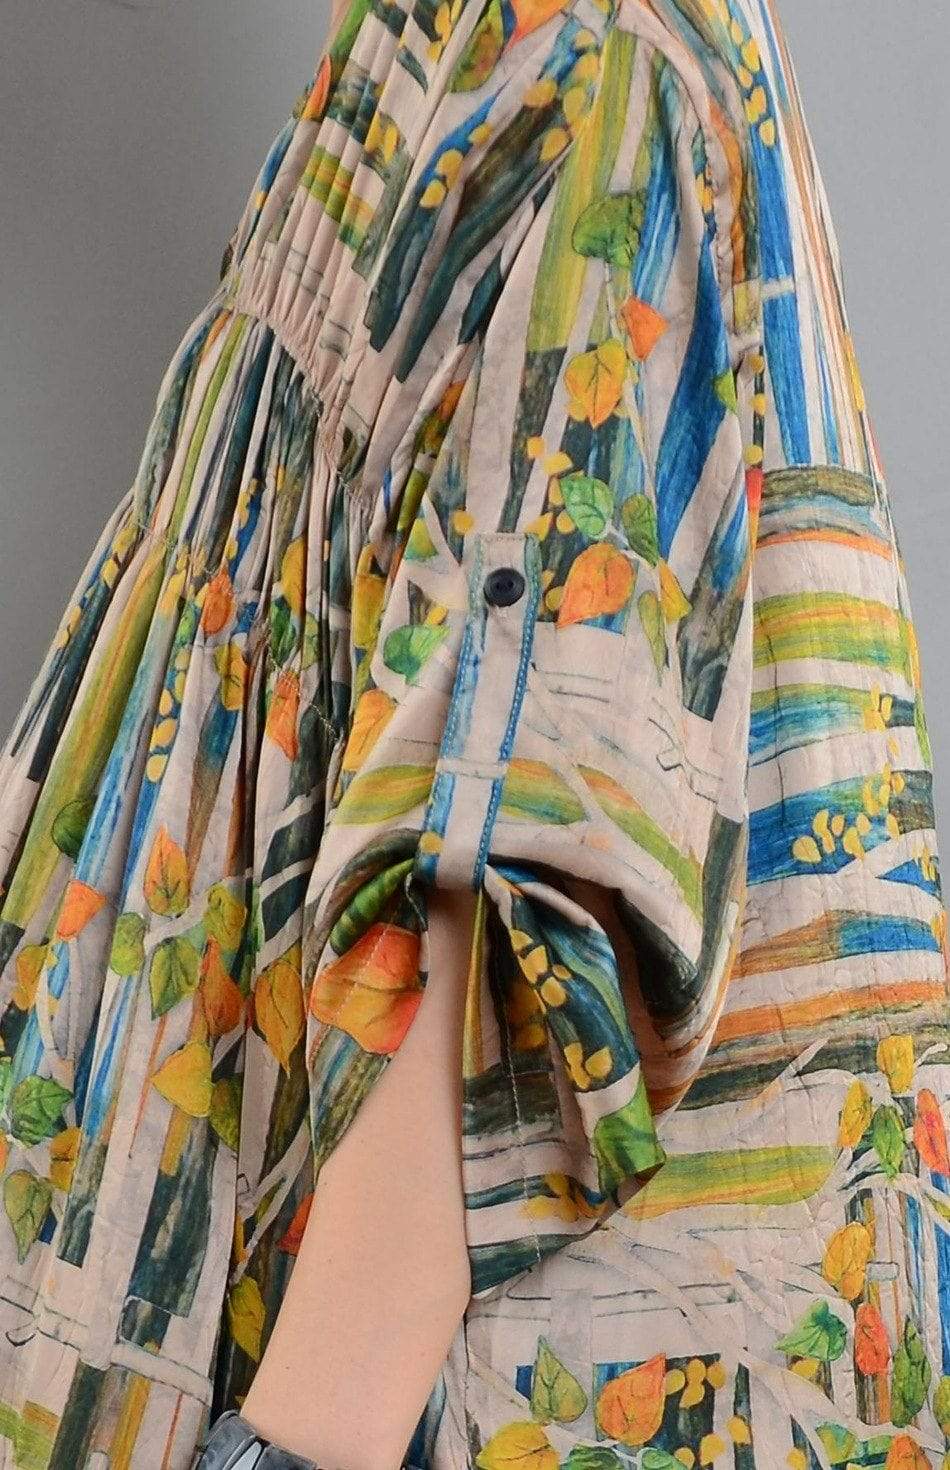 Monet Art Inspired Loose Dress | Nirvana